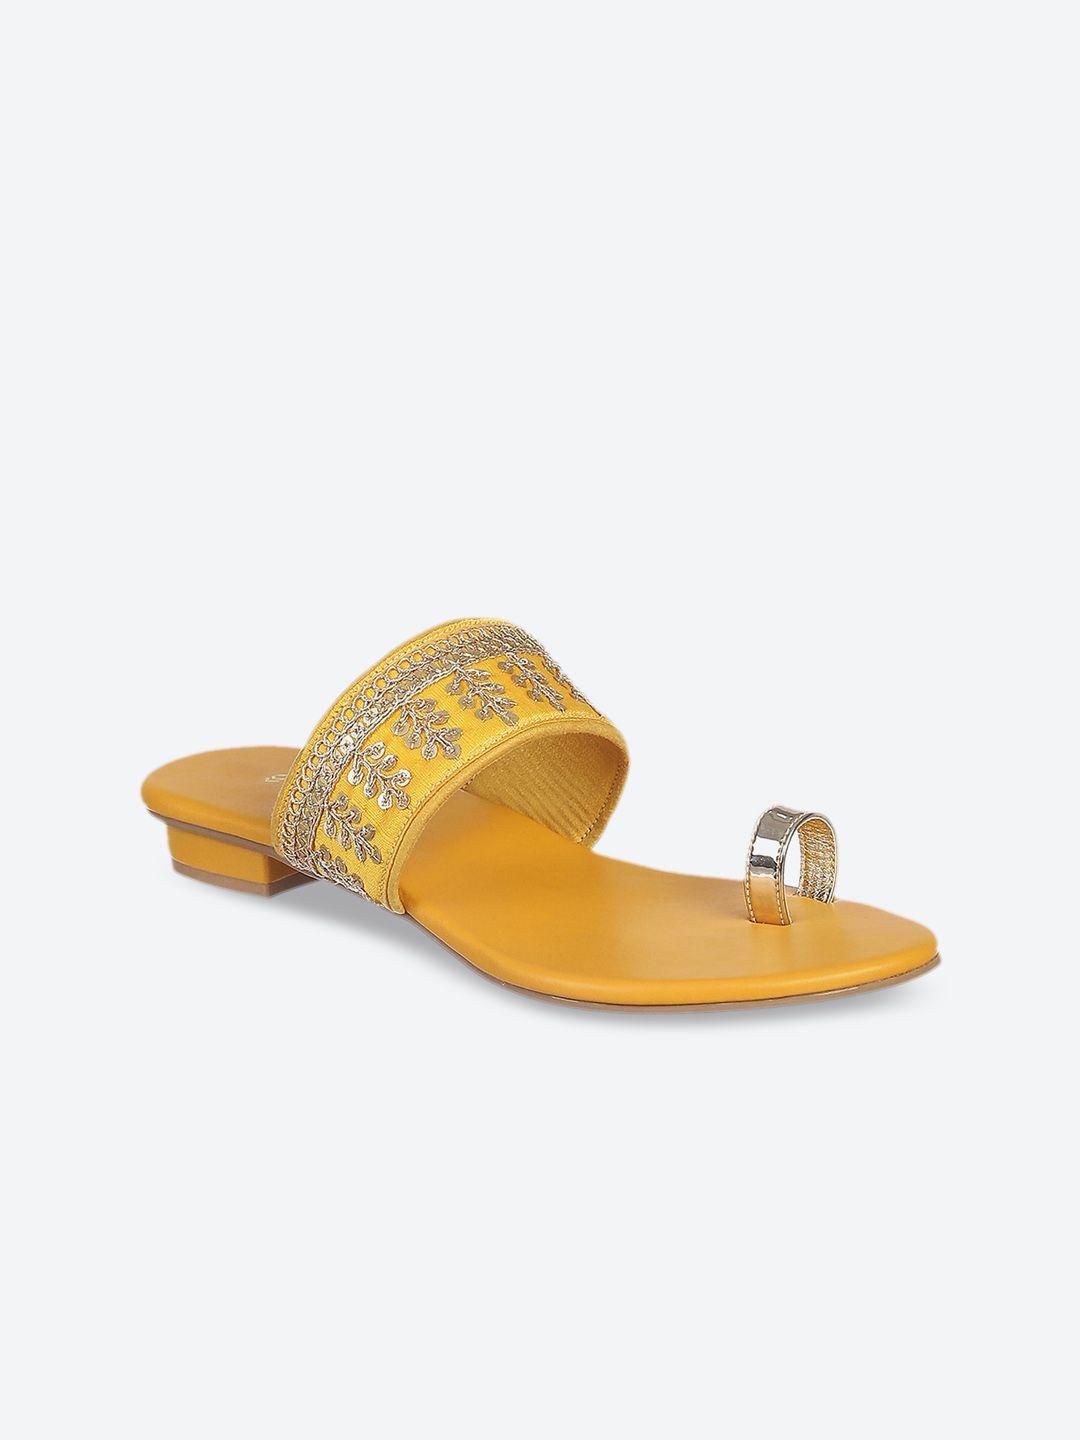 biba women yellow embellished ethnic one toe flats